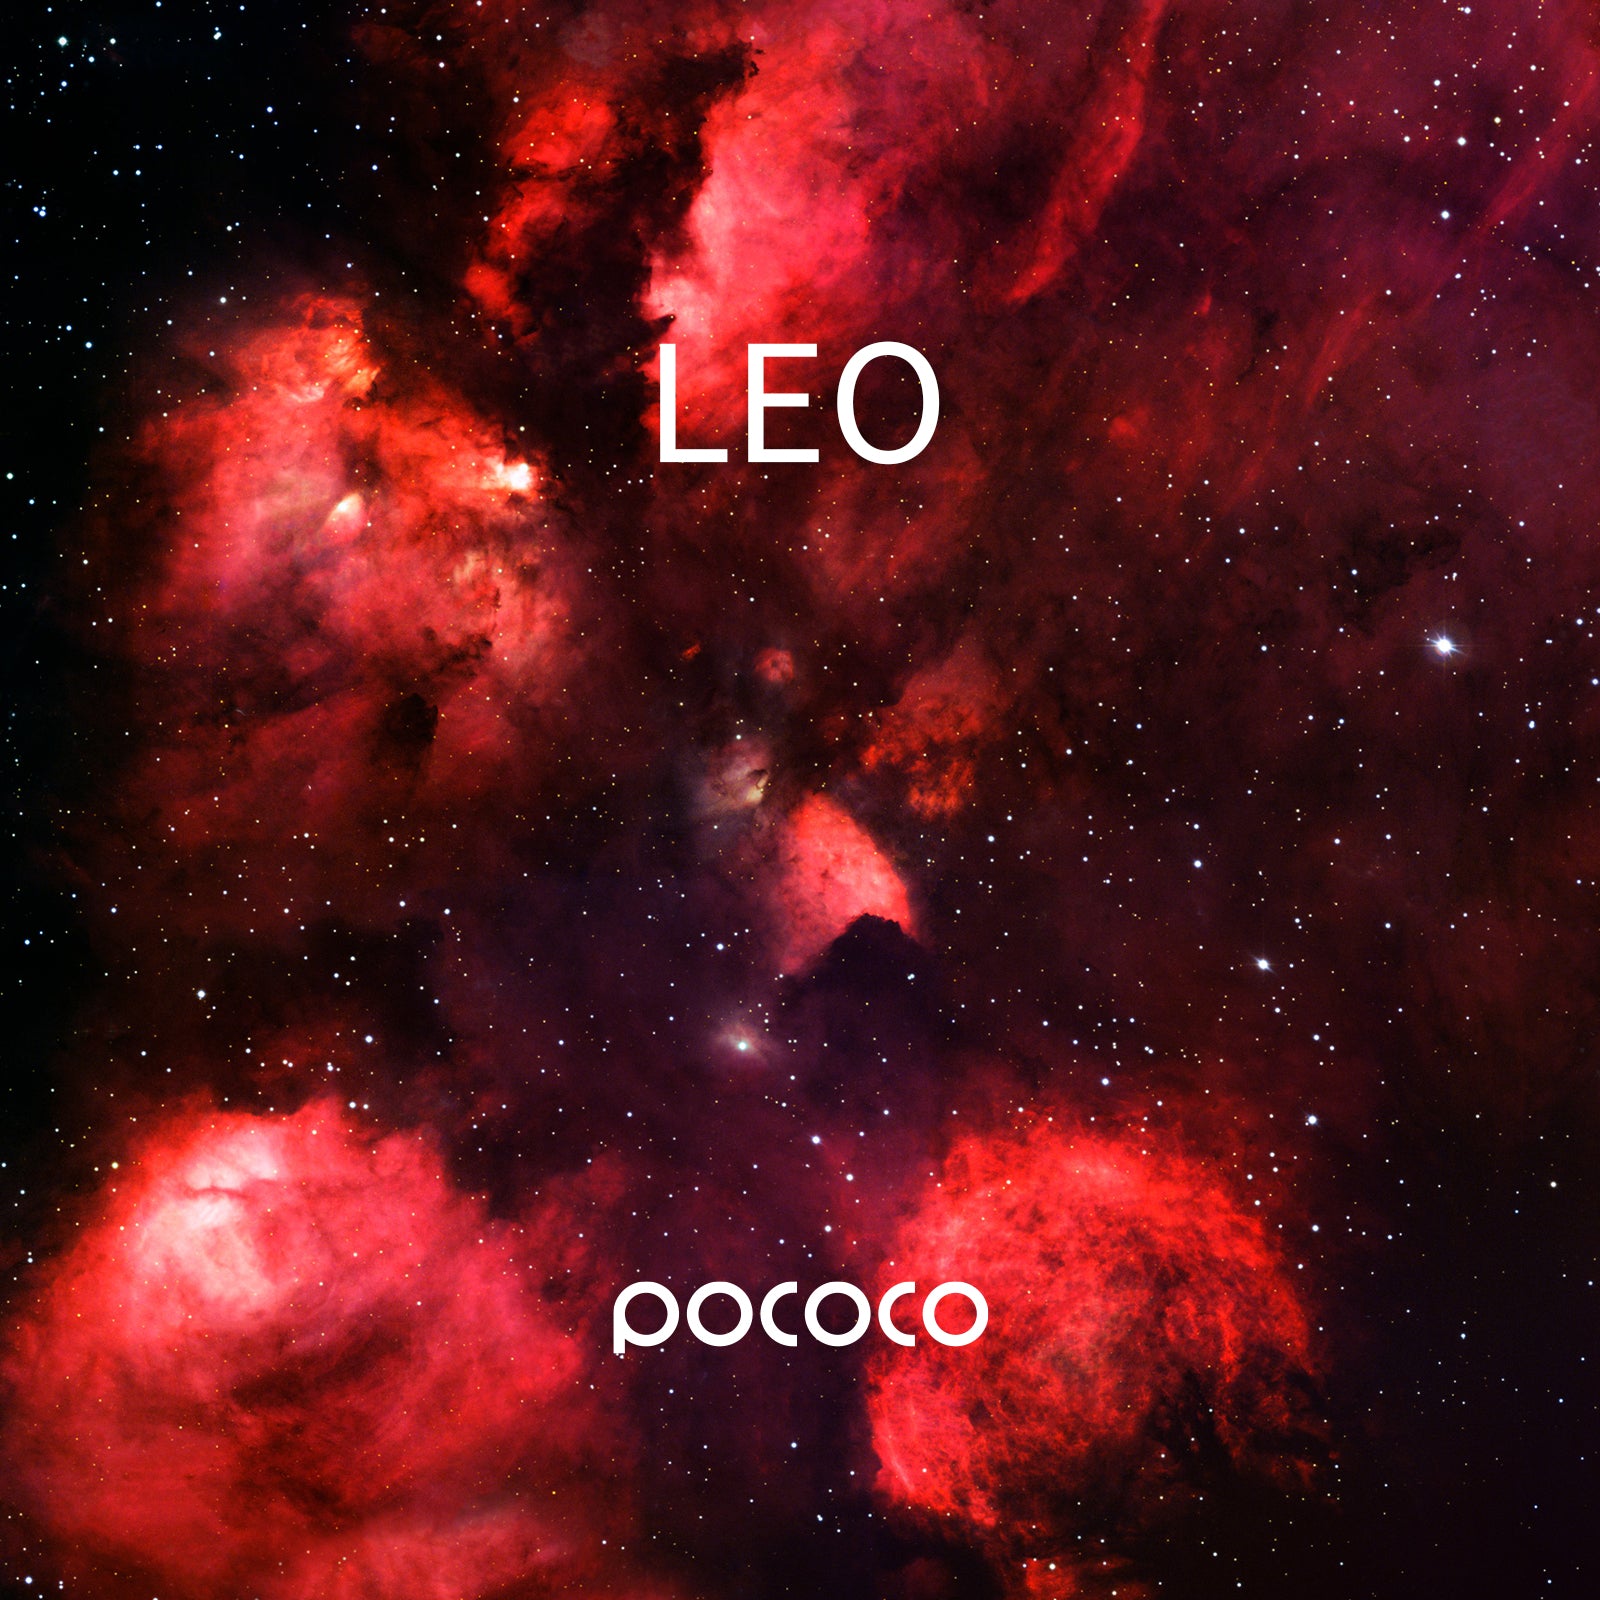 POCOCO Sternenprojektor, Galaxy Lite Home Planetarium Galaxy